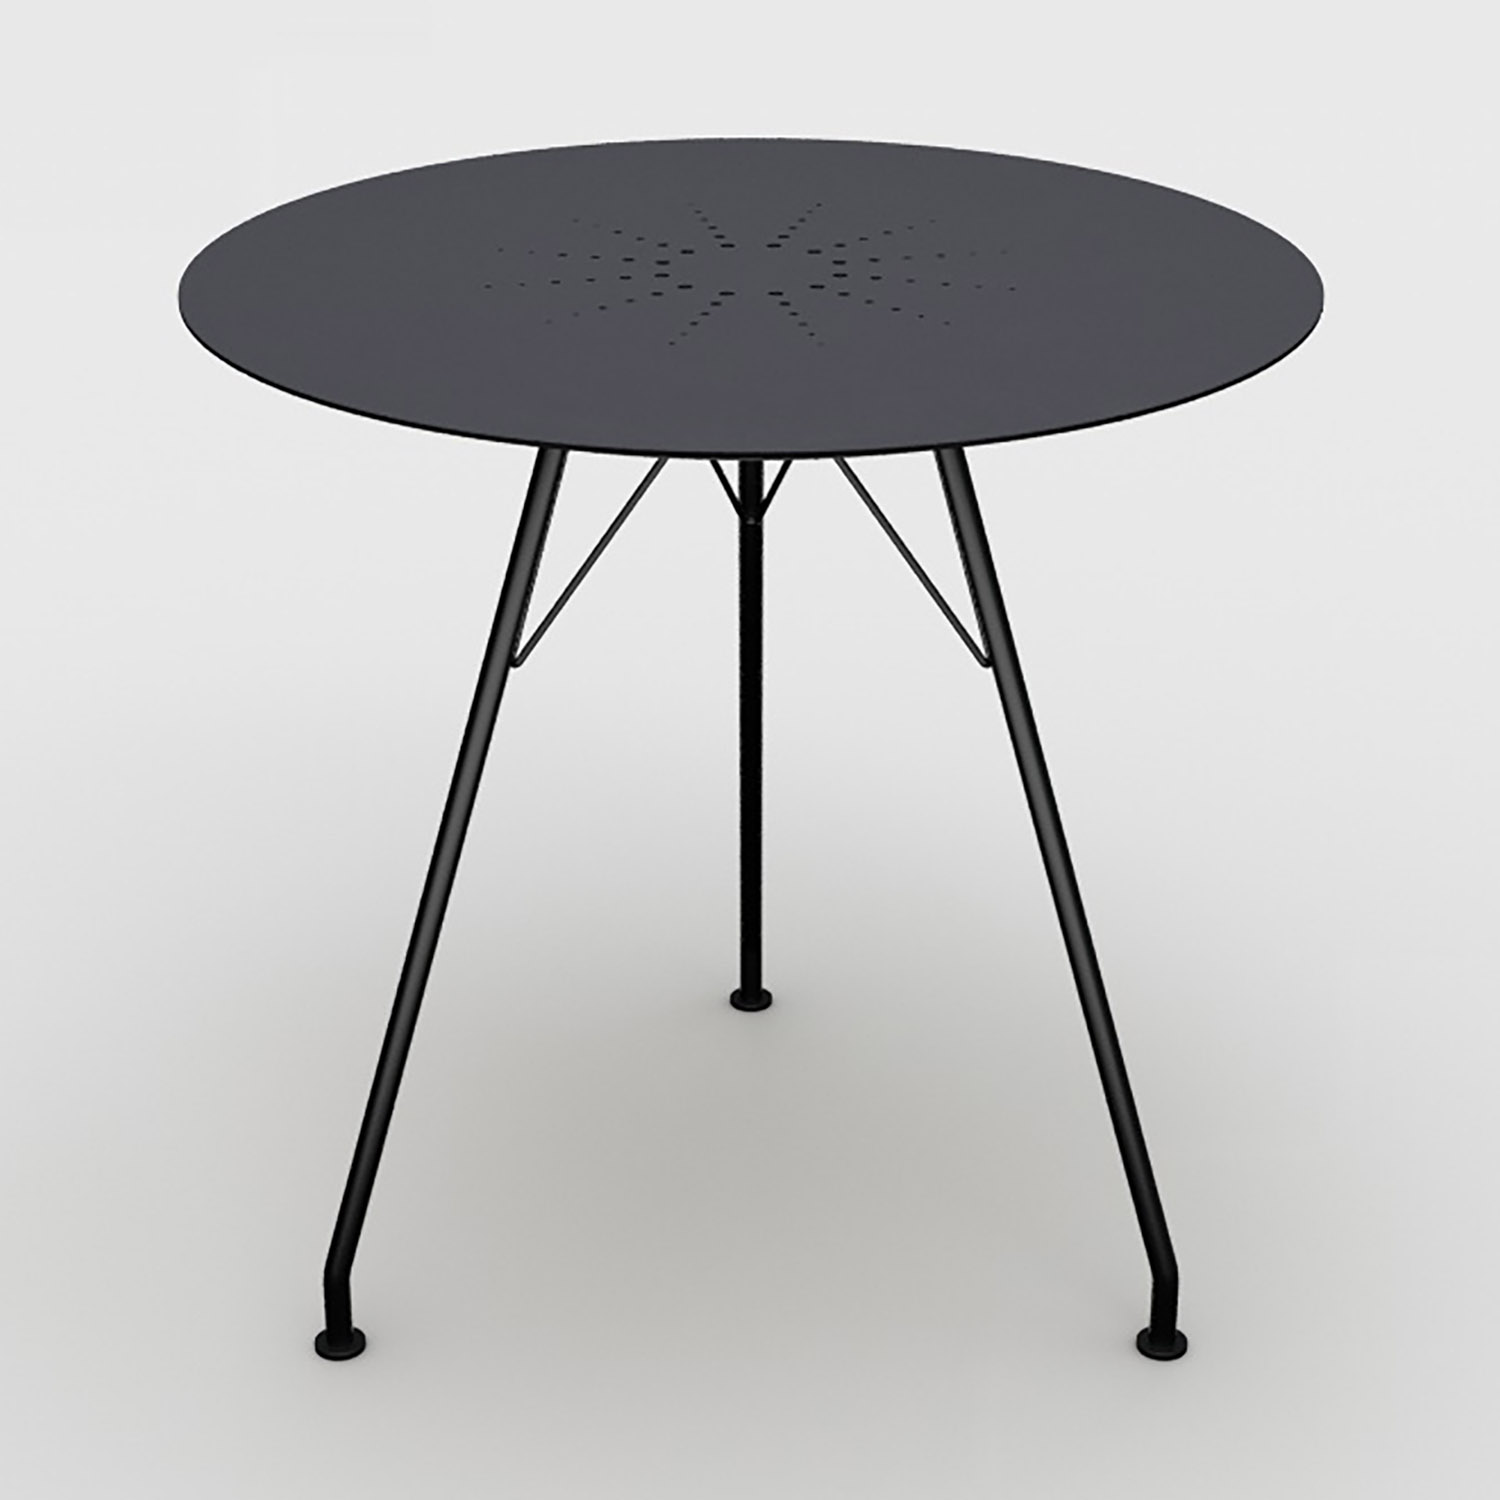 Circum cafébord svart Ø74 cm